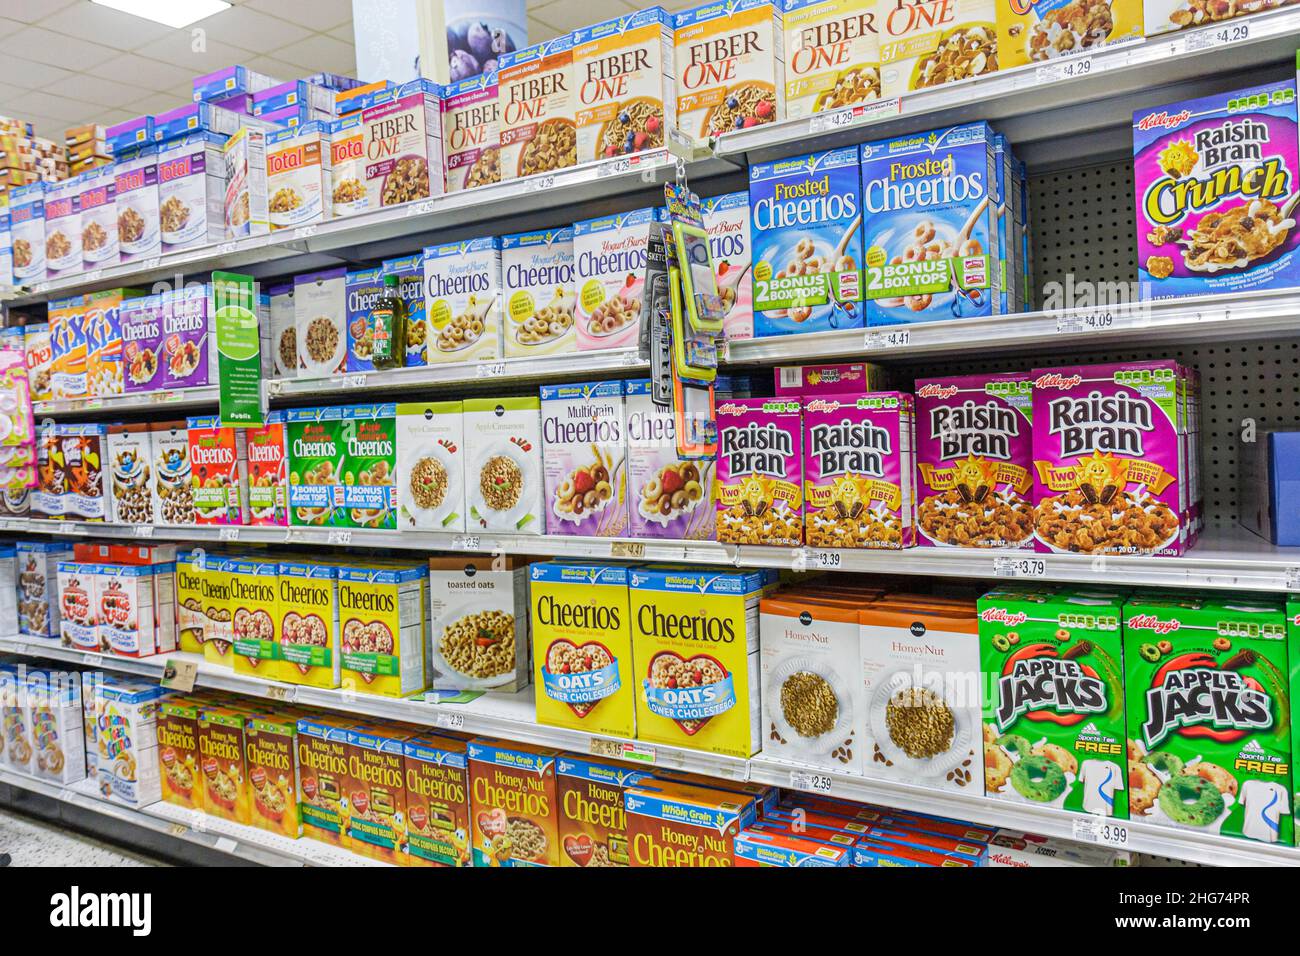 Miami Beach Florida, supermercado Publix, estanterías de supermercados, cajas de cereales para el desayuno, Kellogg's Post General Mills Cheerios Raisin Bran Foto de stock